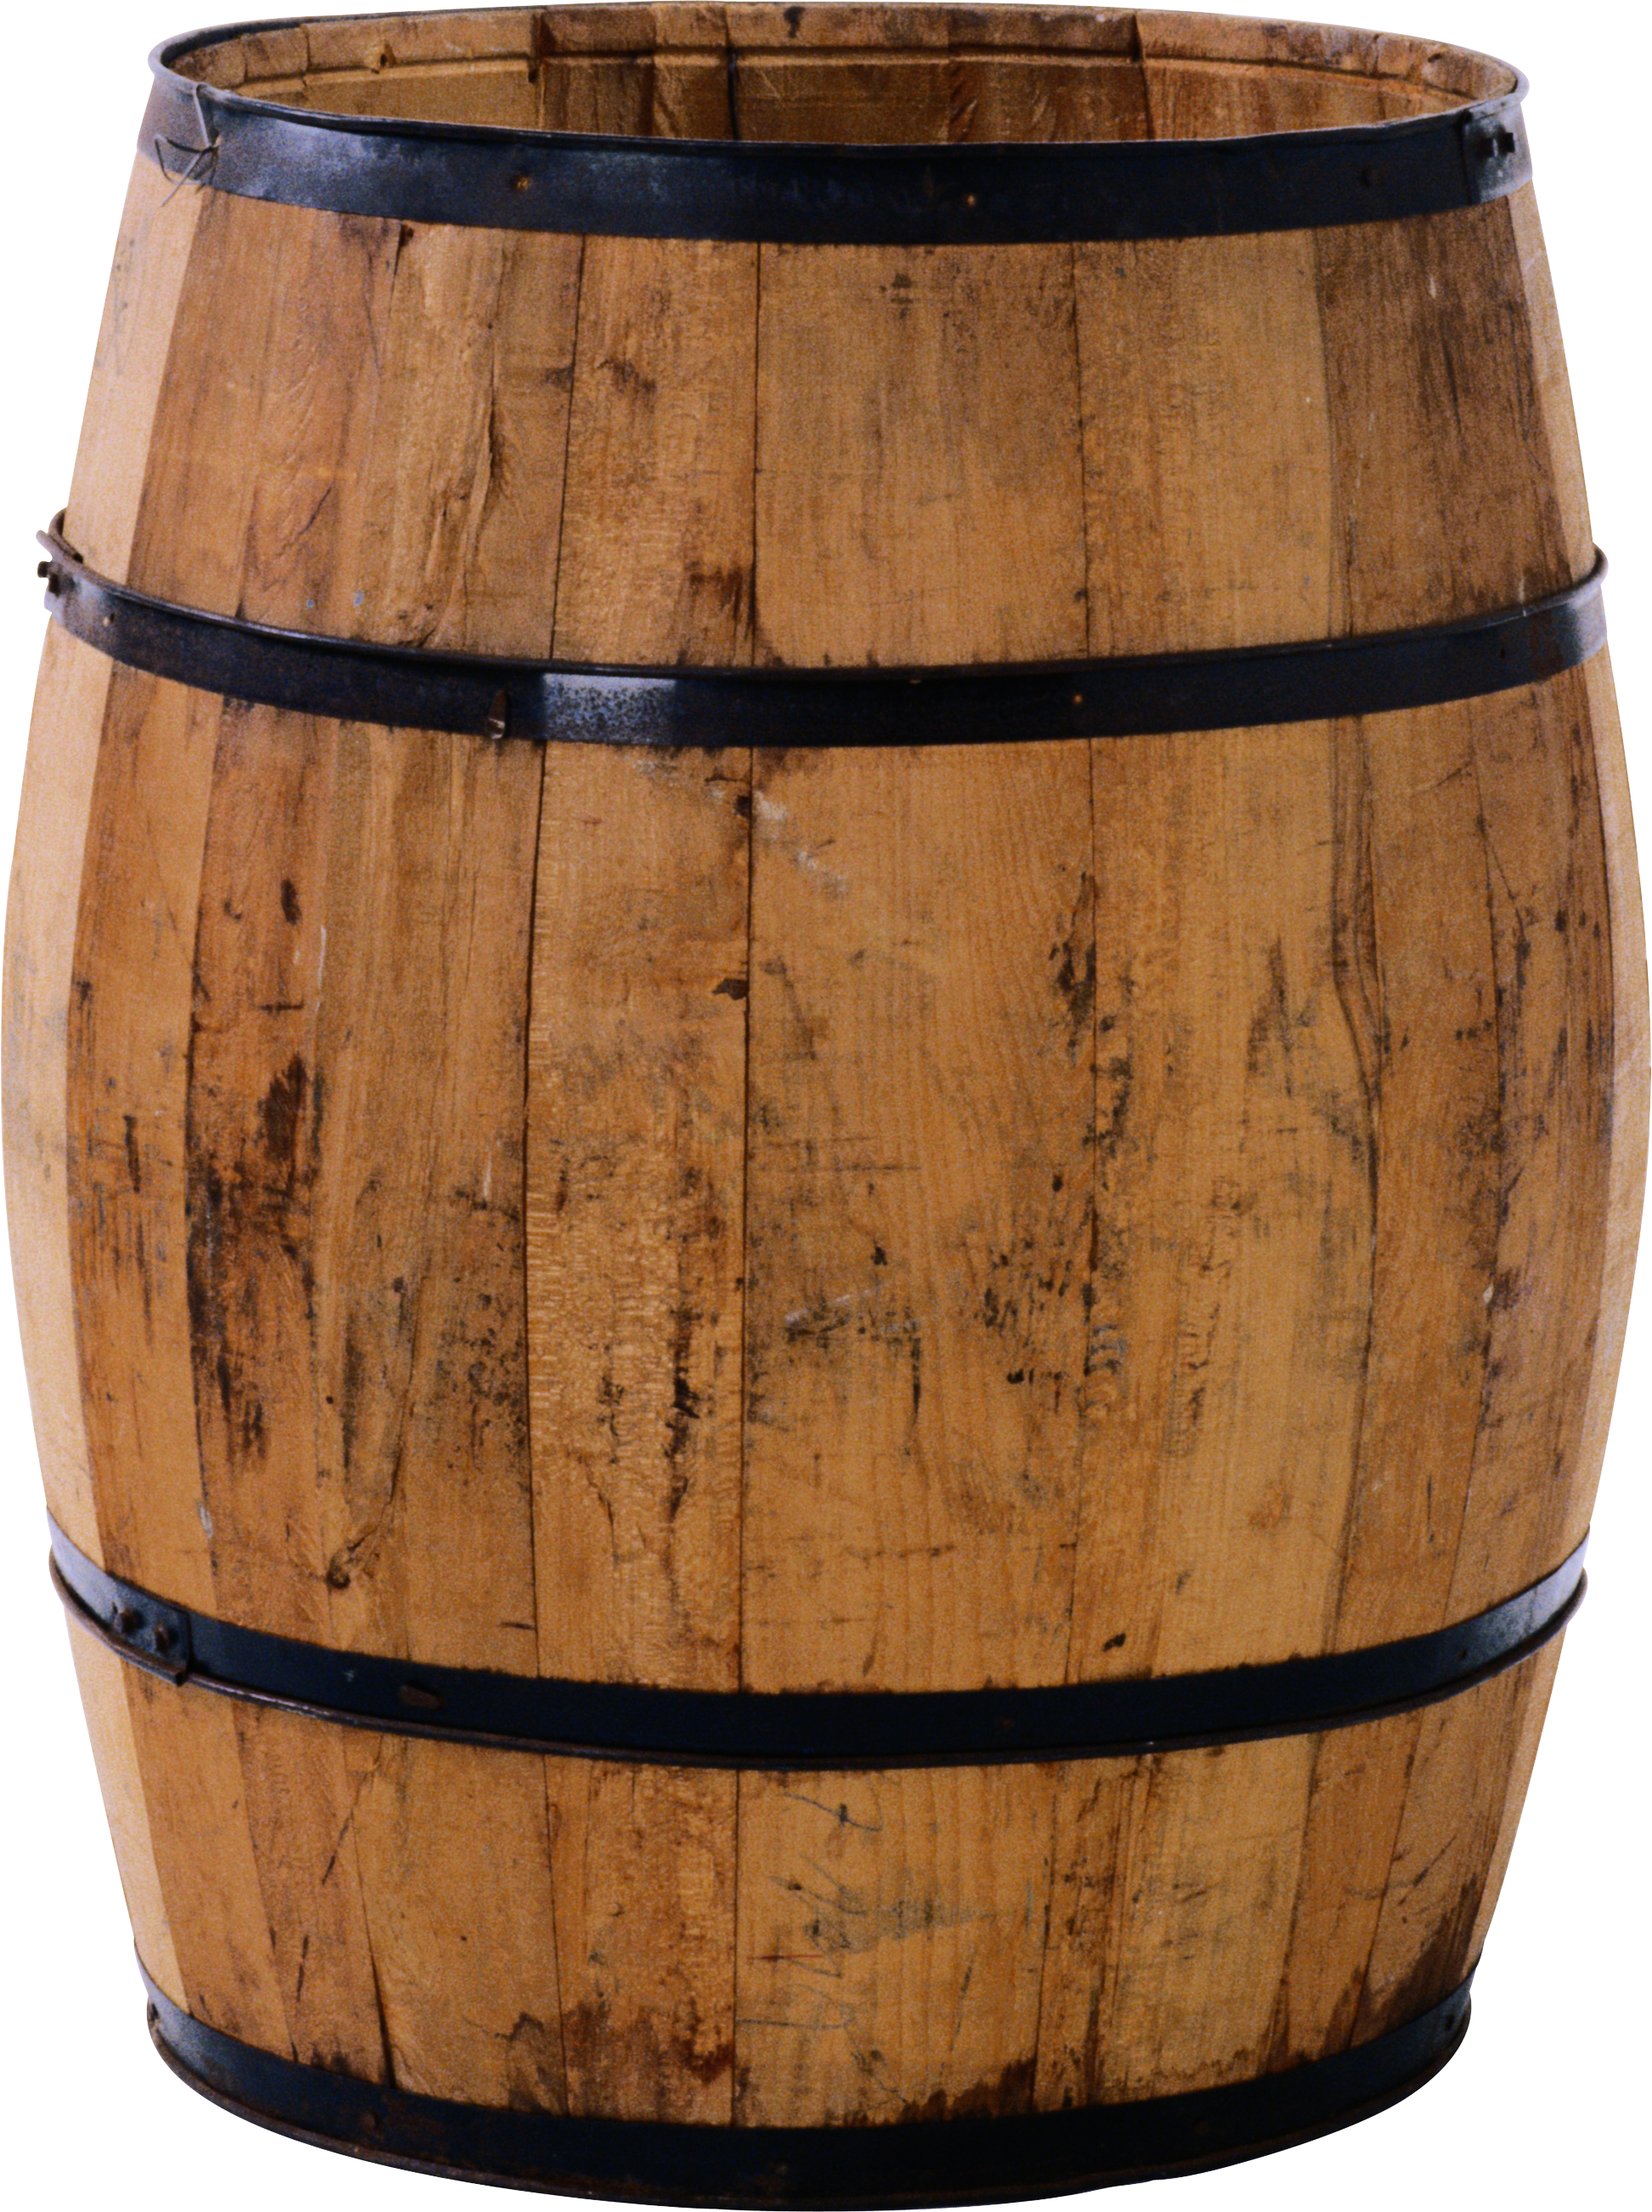 Barrel wood PNG